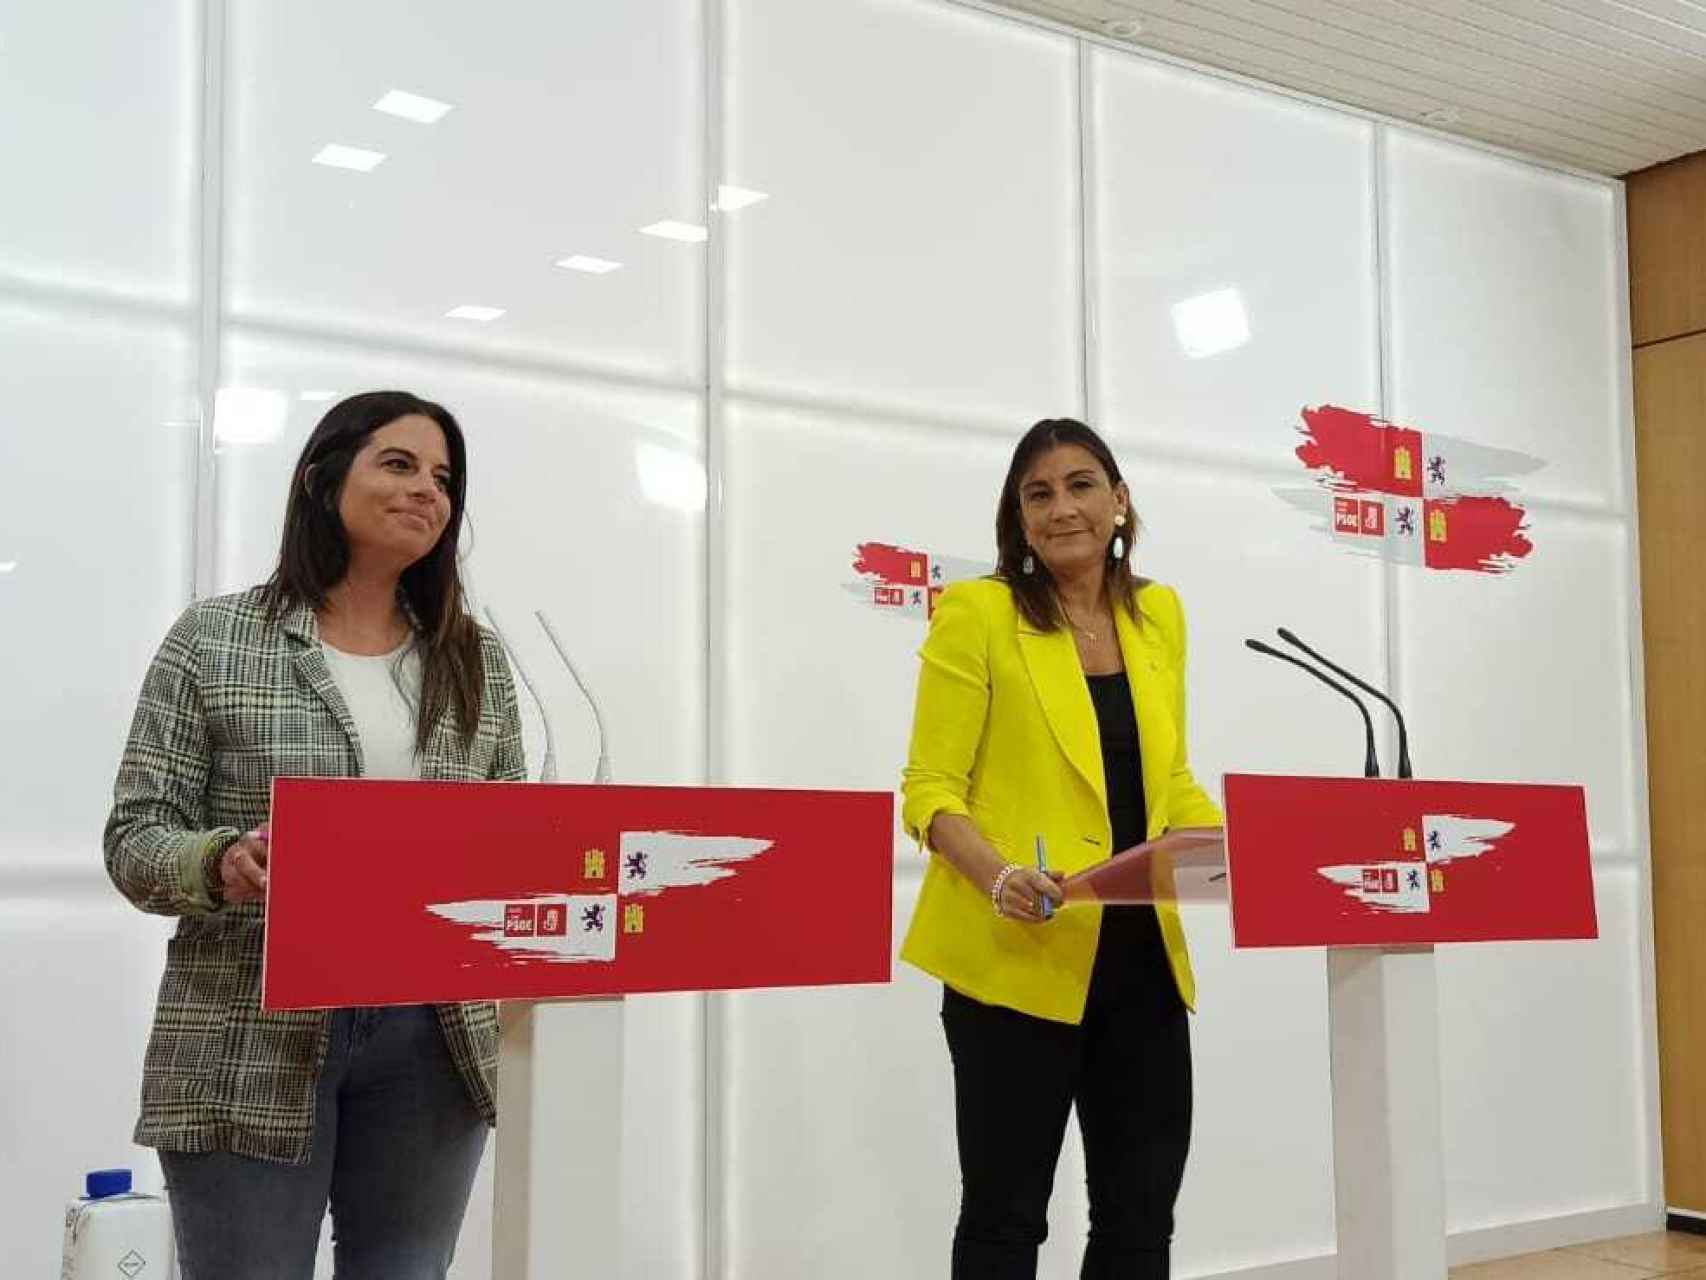 La procuradora socialista Ana Sánchez y su compañera Nuria Rubio durante la rueda de prensa de este lunes.